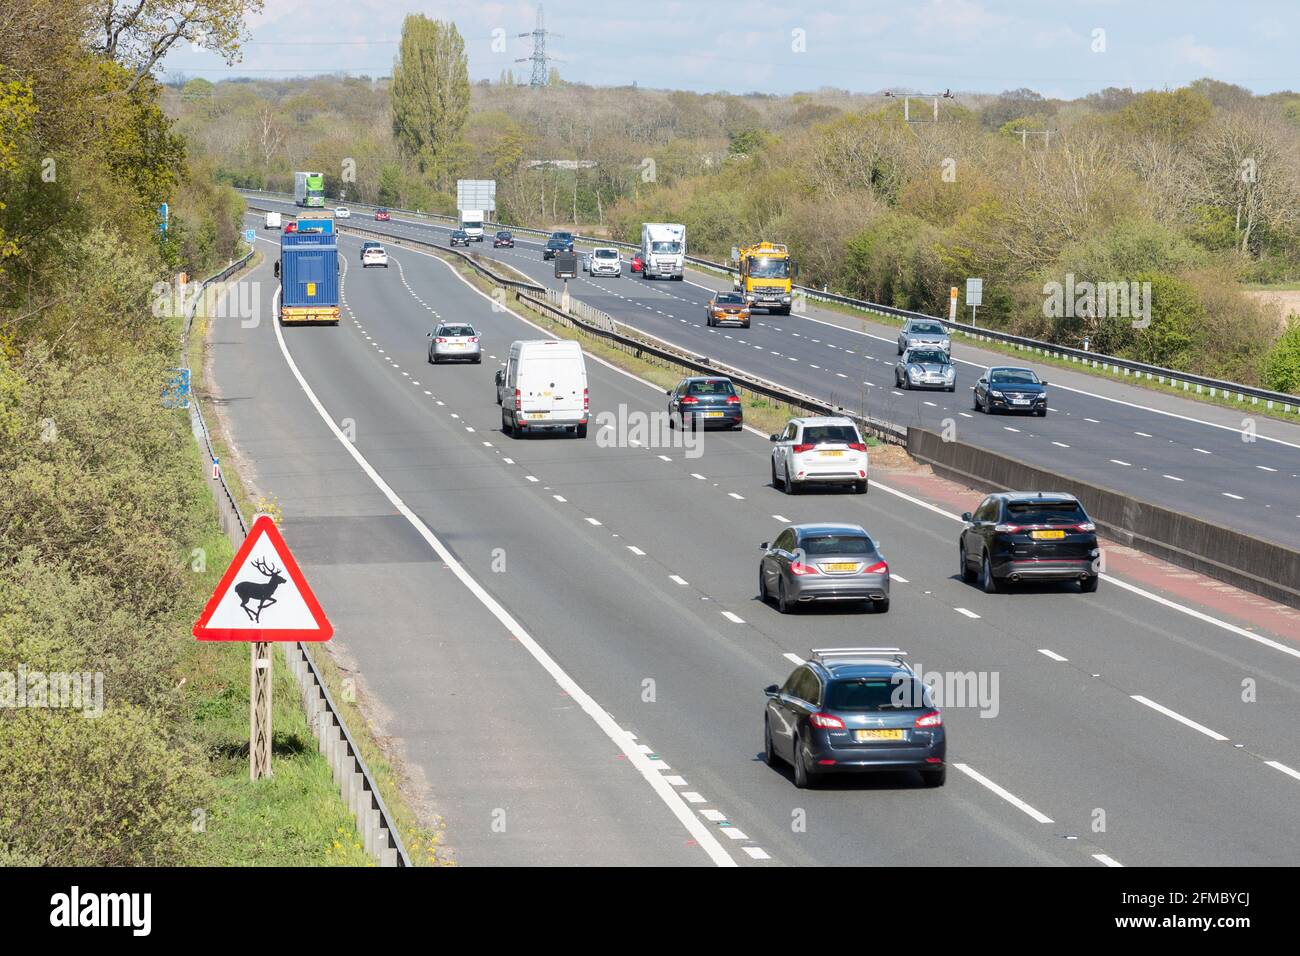 Panneau d'avertissement triangulé au passage des cerfs sur l'autoroute M3 avec voitures de circulation, Hampshire, Angleterre, Royaume-Uni Banque D'Images